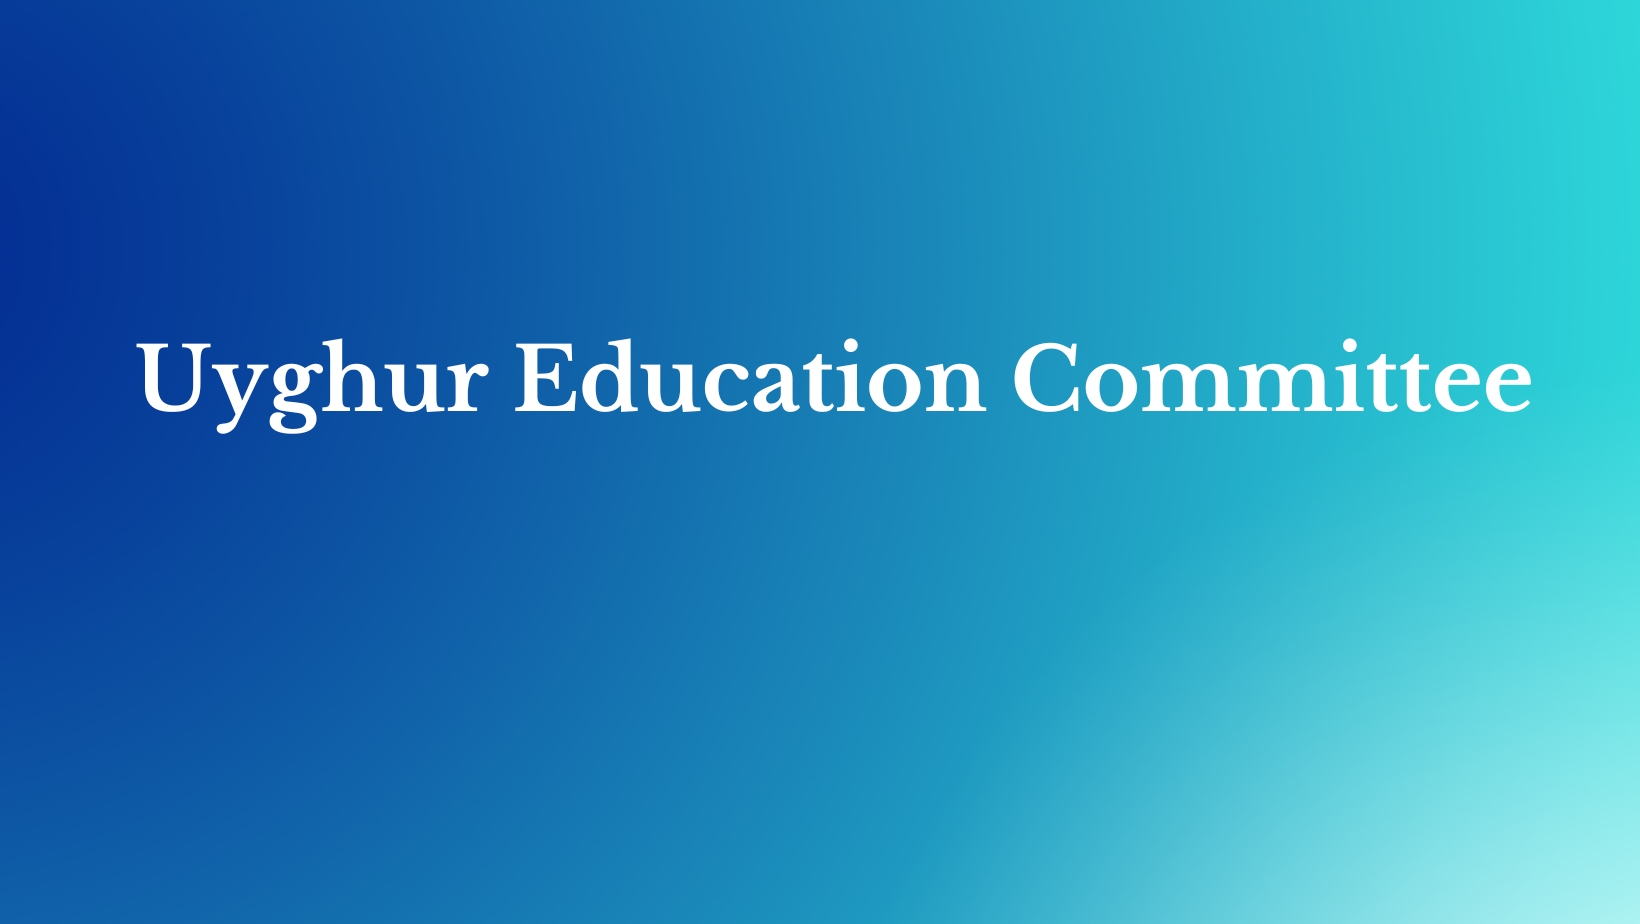 Uyghar Education: www.uyghar.com